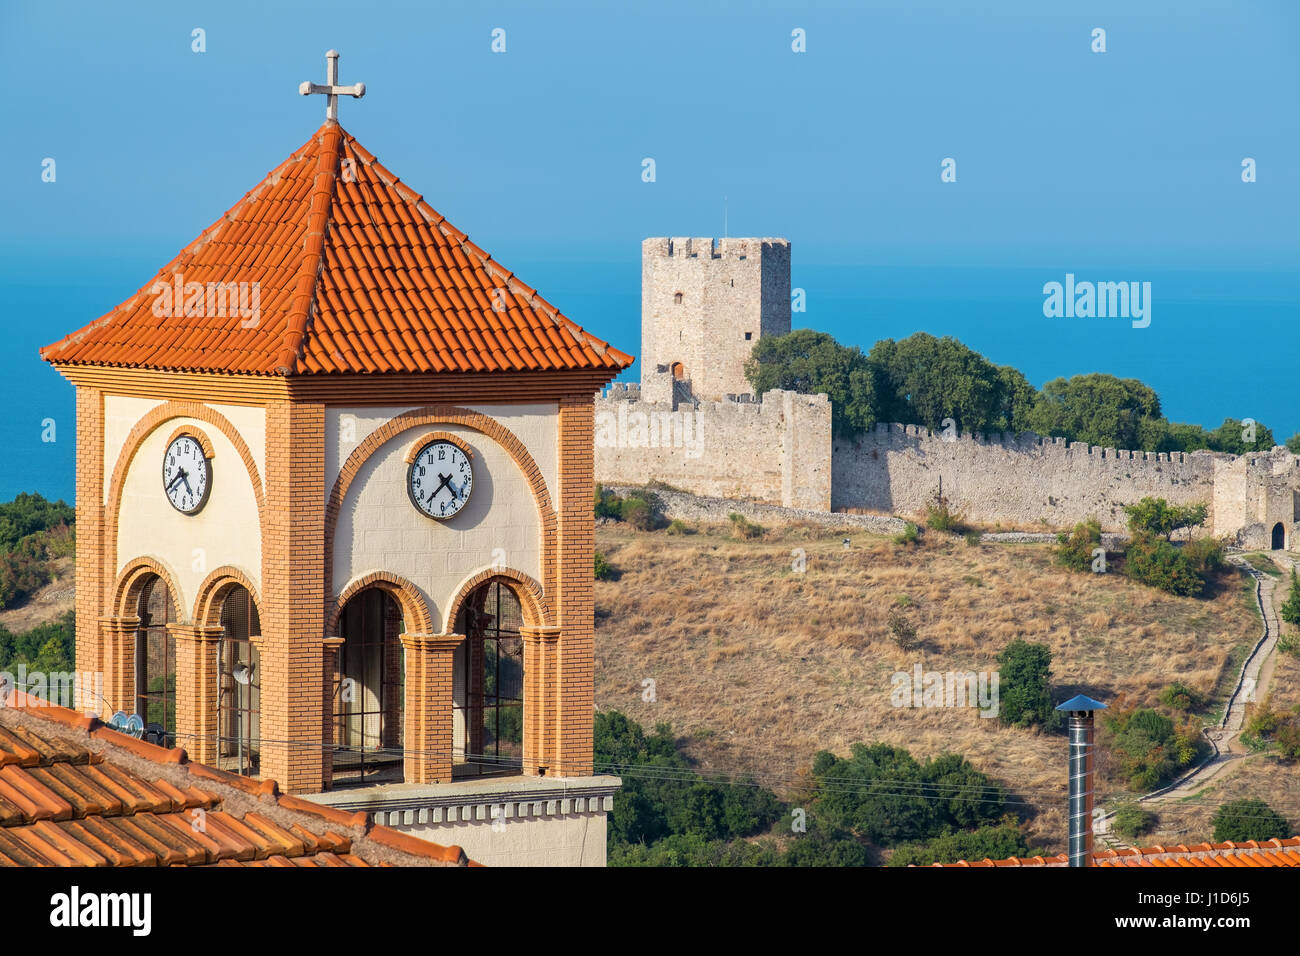 Glockenturm der Kirche von Agios Eleftherios in Neos Panteleimonas Dorf und mittelalterliche Festung Platamonas in der Entfernung. Pieria, Mazedonien, Gr Stockfoto